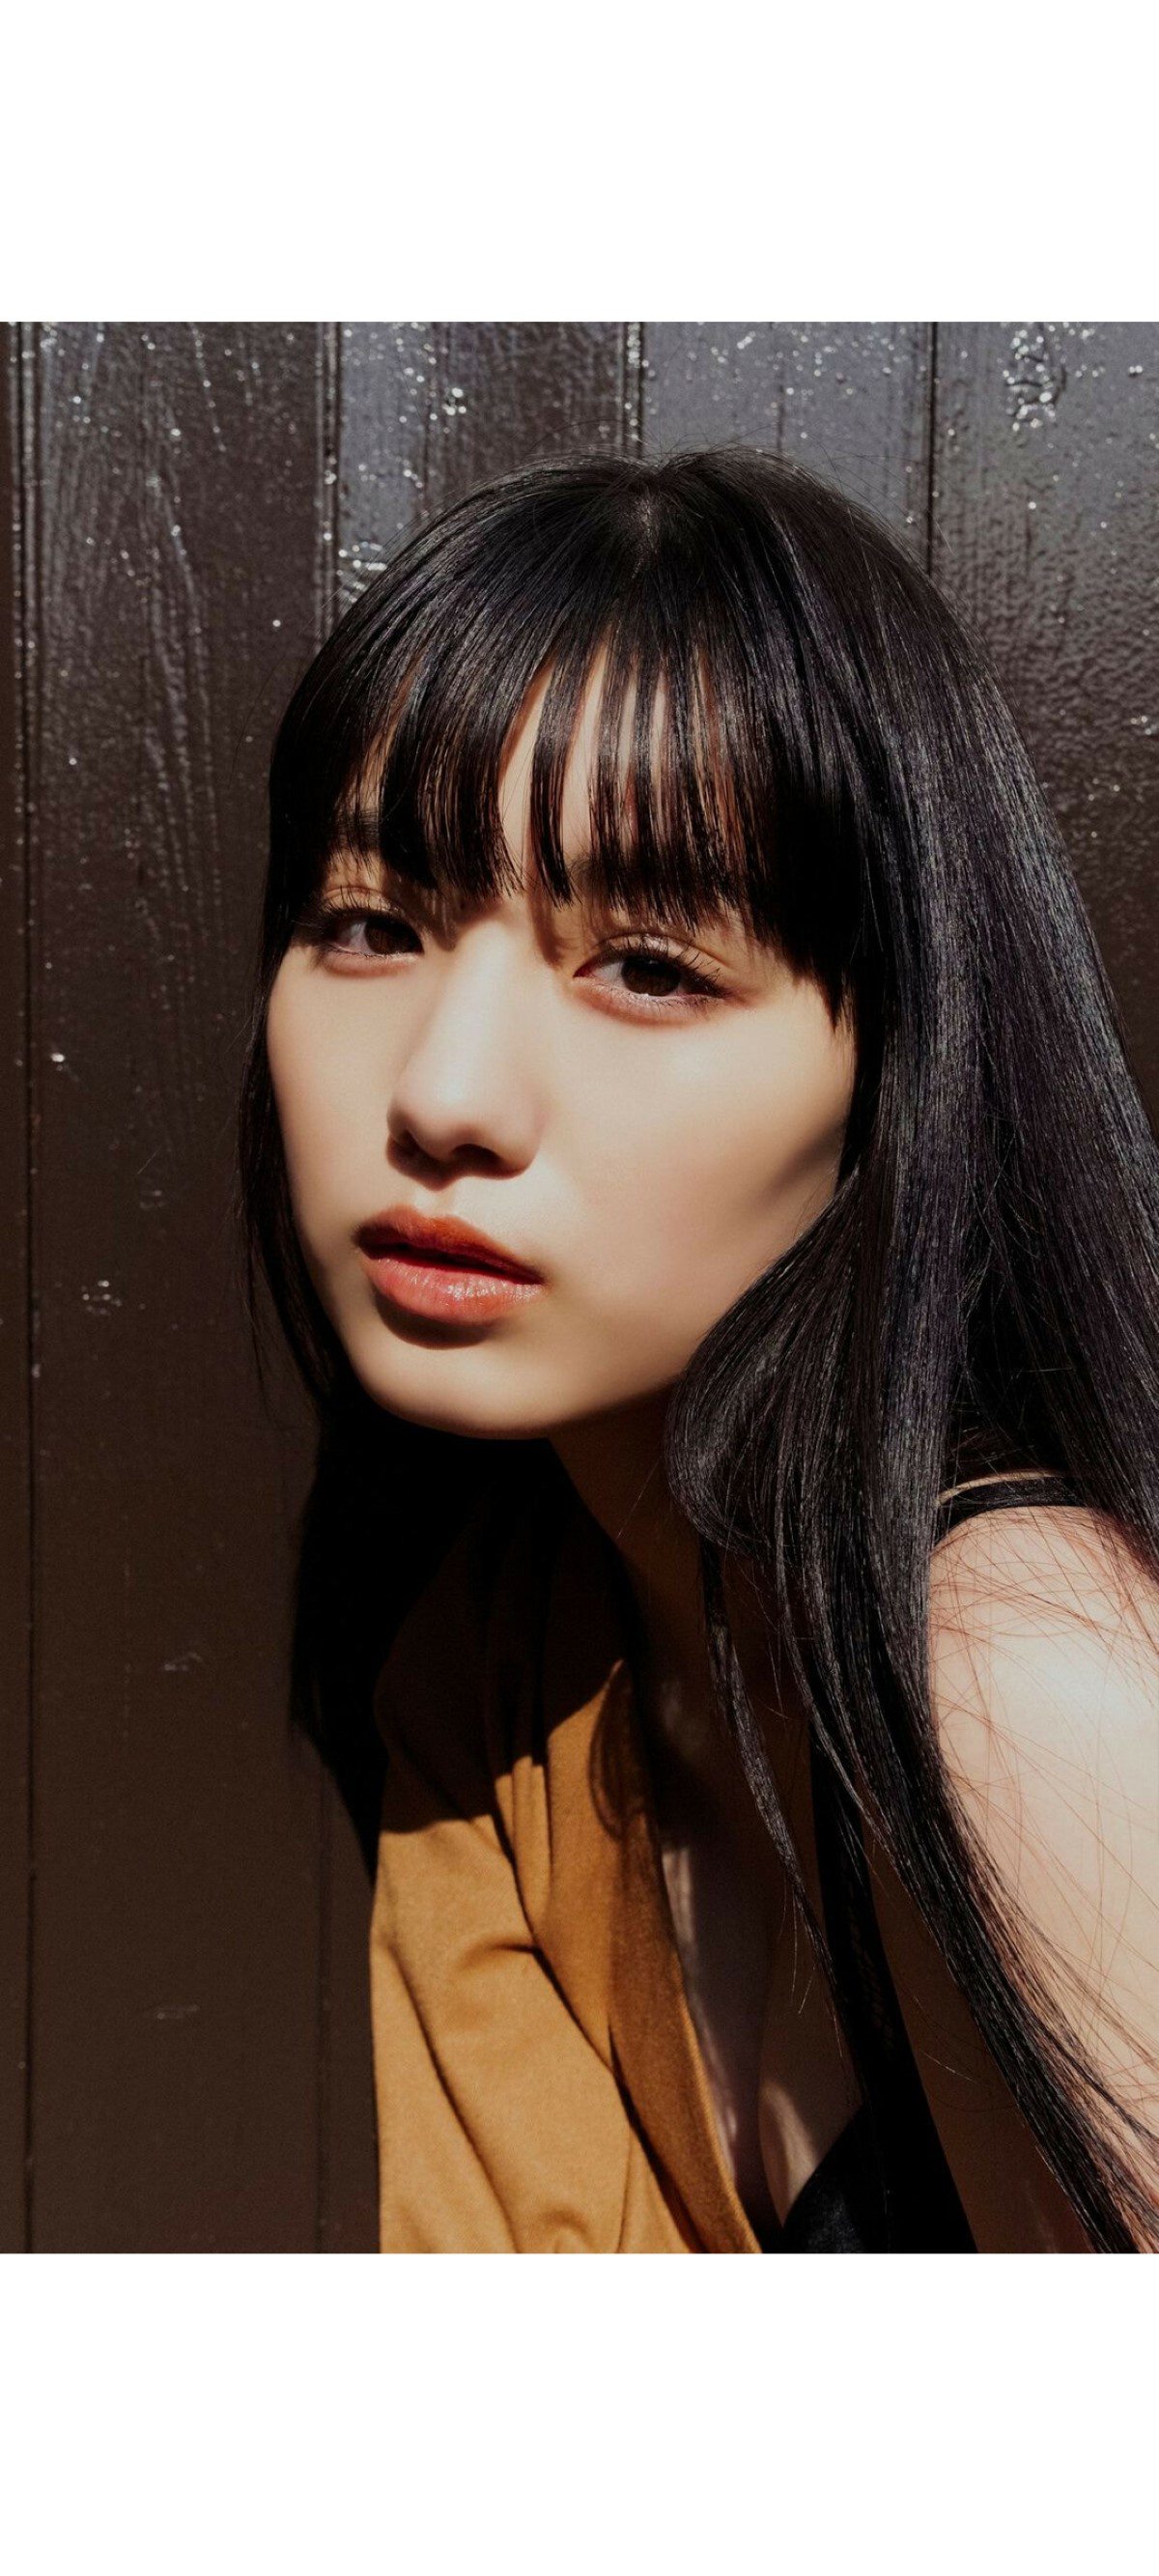 Weekly Photobook 2020 12 07 Noa Tsurushima 鶴嶋乃愛 A natural actress 生まれながらにして女優 007 3410772792.jpg